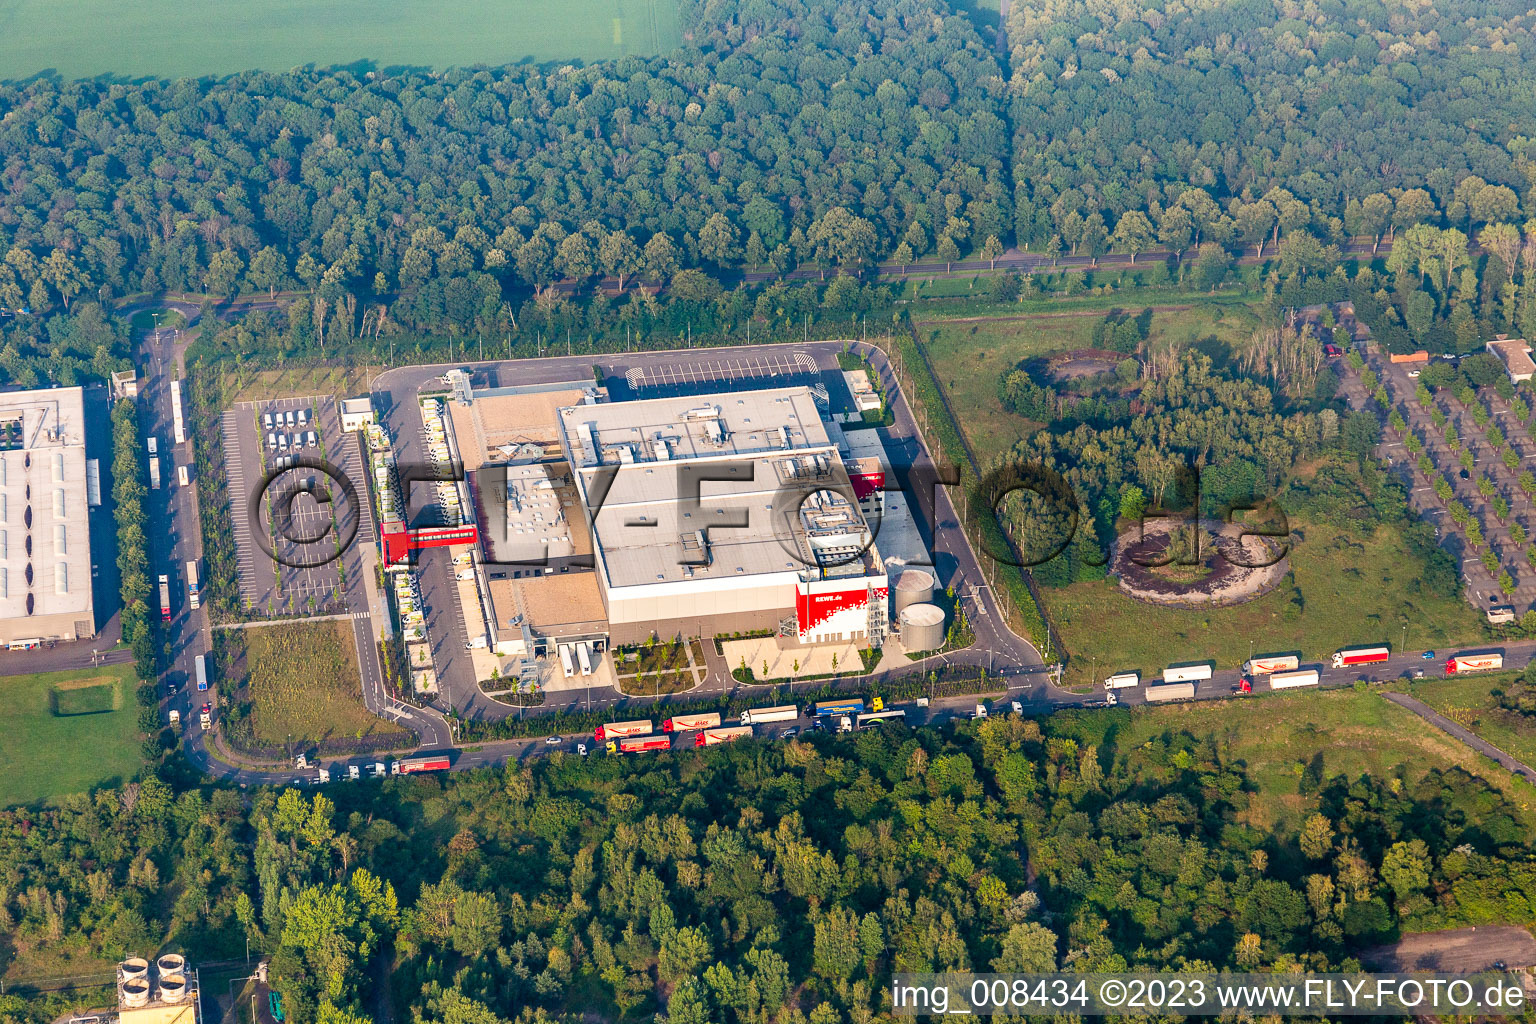 Vue aérienne de Complexe immobilier et terrain du centre logistique REWE Markt GmbH à le quartier Niehl in Köln dans le département Rhénanie du Nord-Westphalie, Allemagne